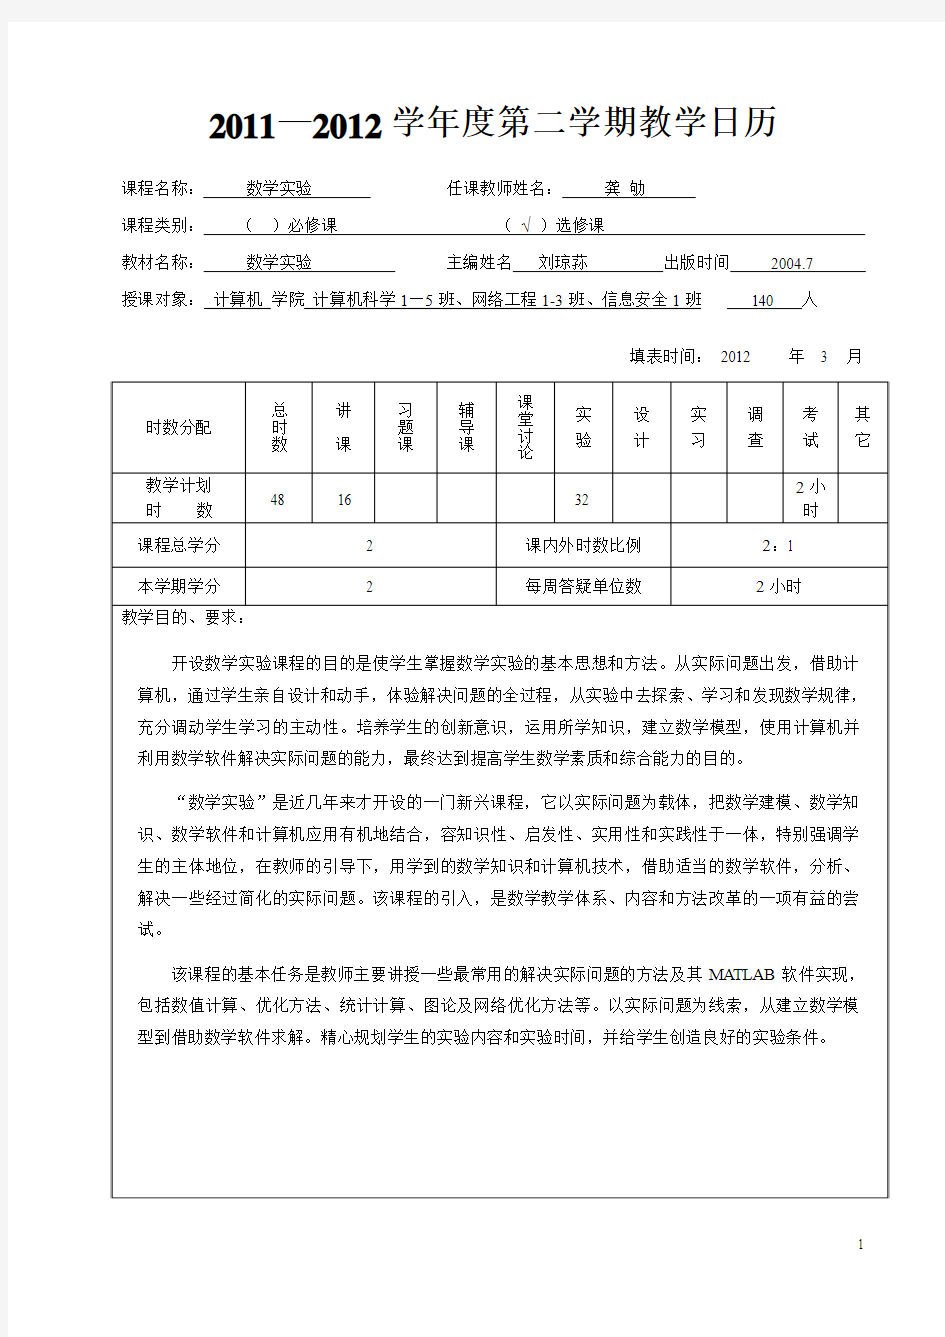 时数分配 - 重庆大学-数学与统计学院-数学实验